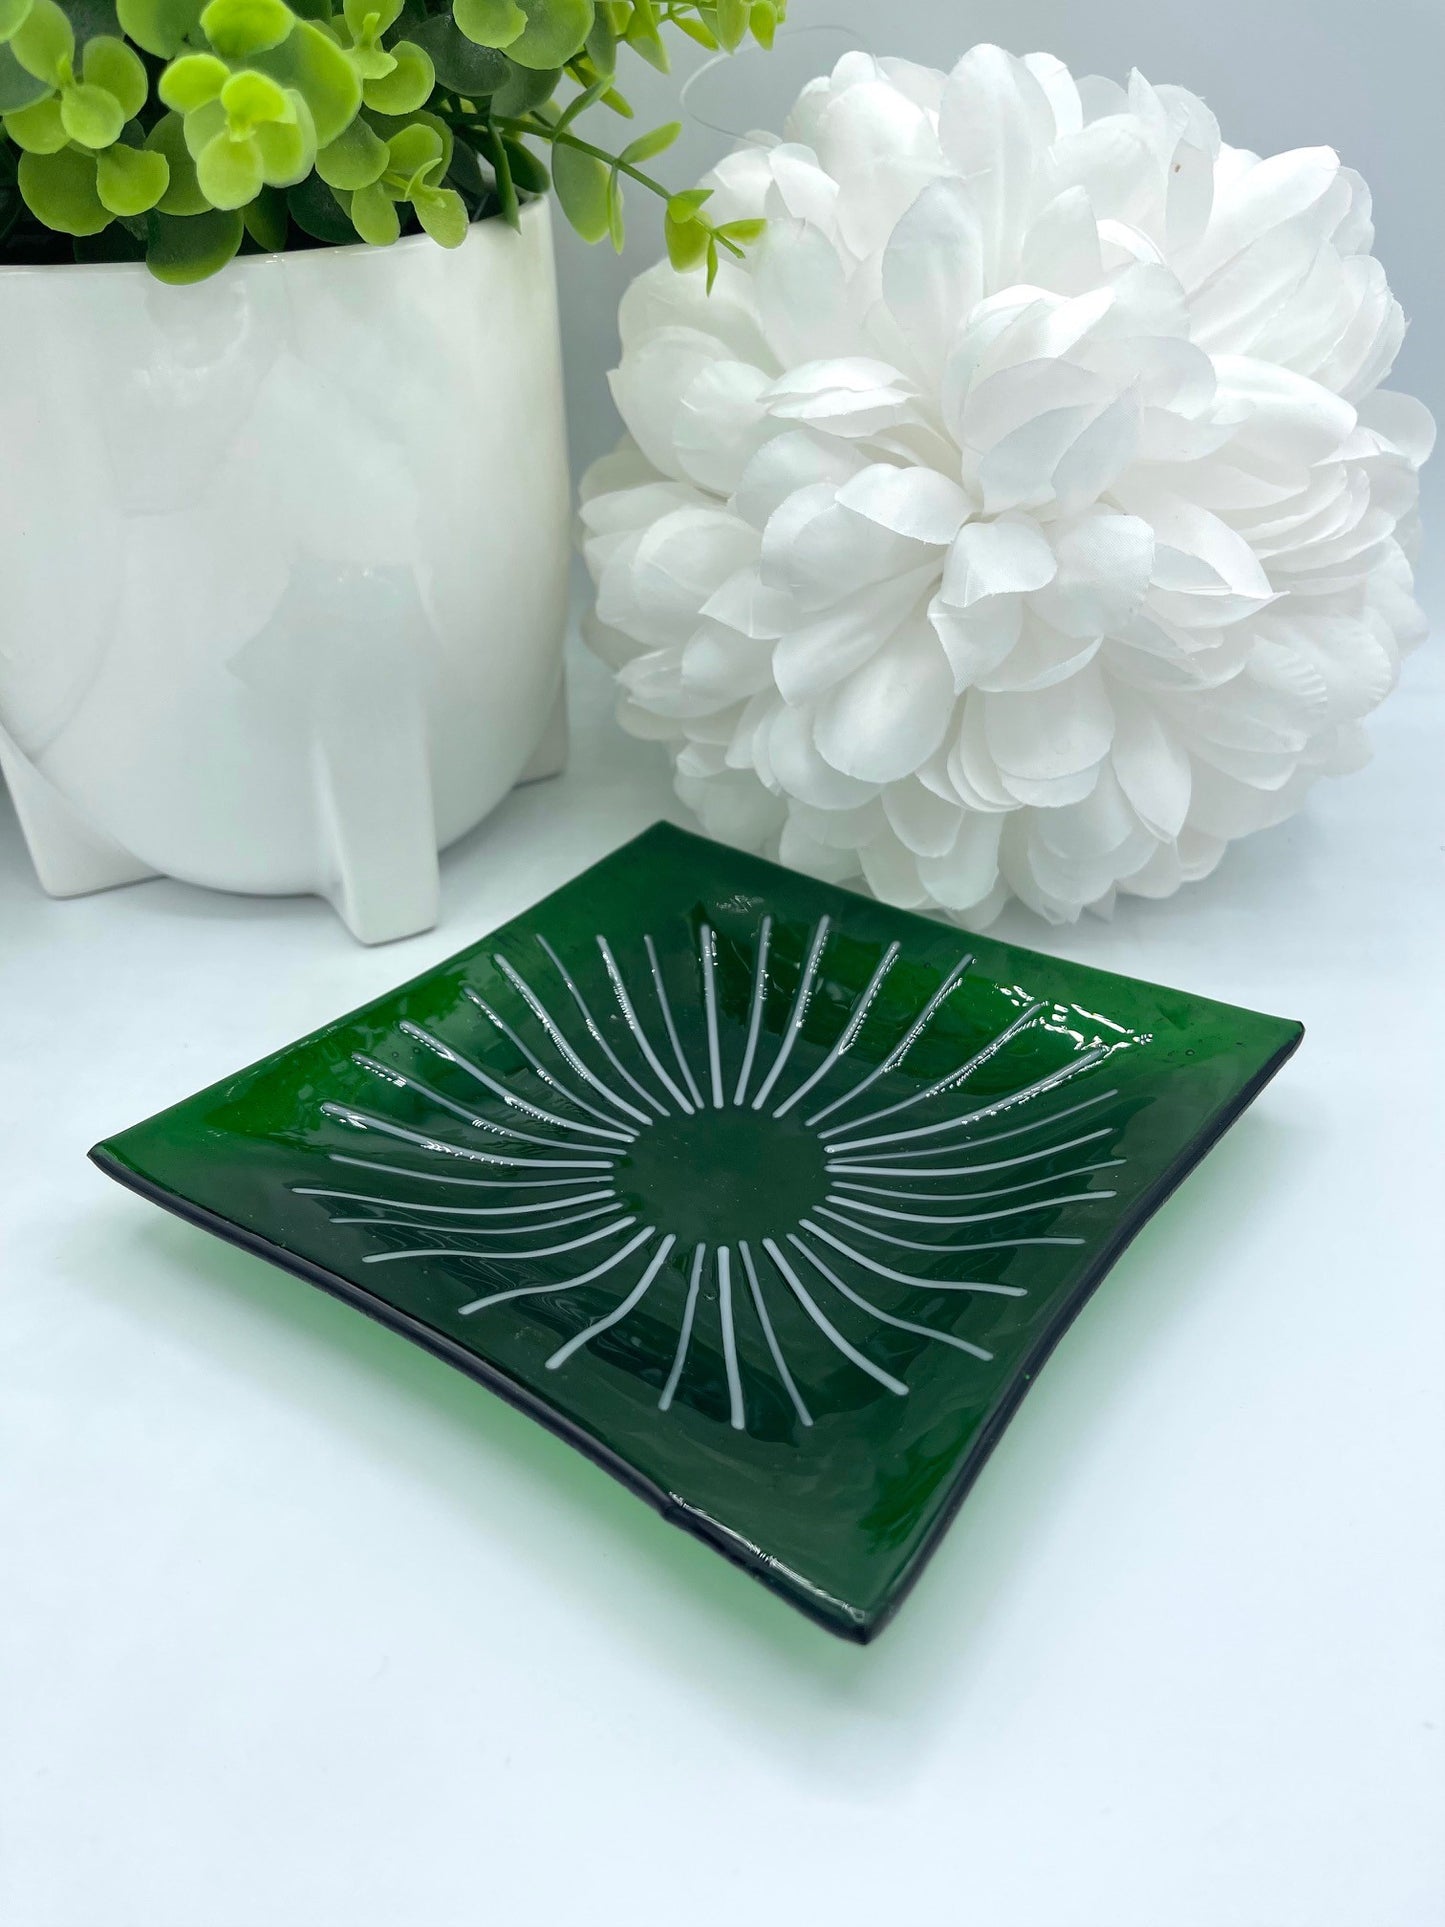 Green Sun Glass Tray